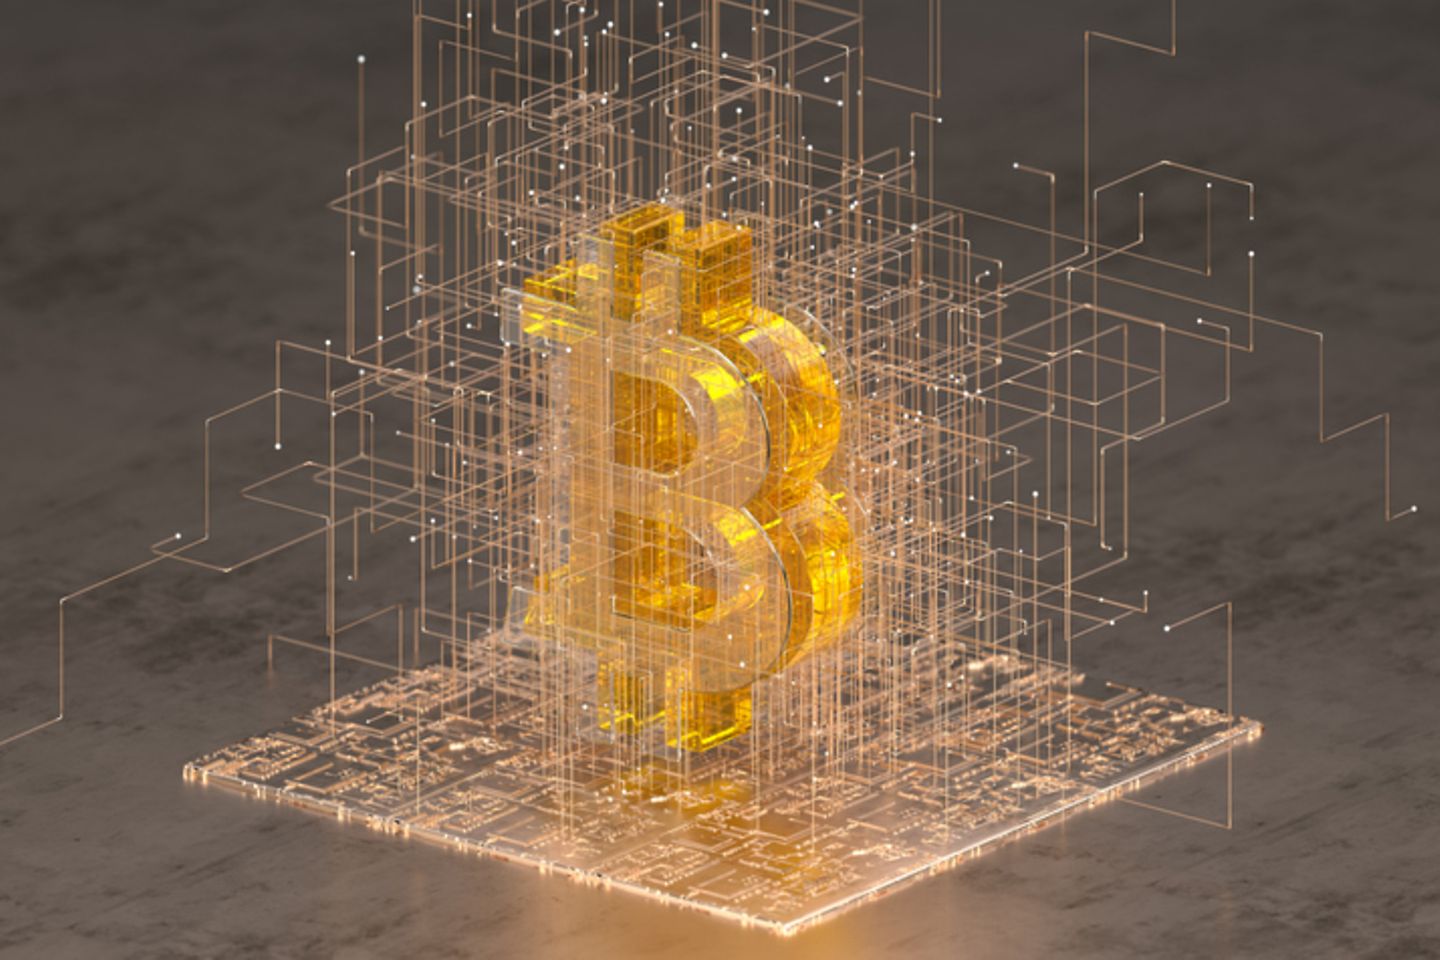 Virtual representation of the bitcoin sign